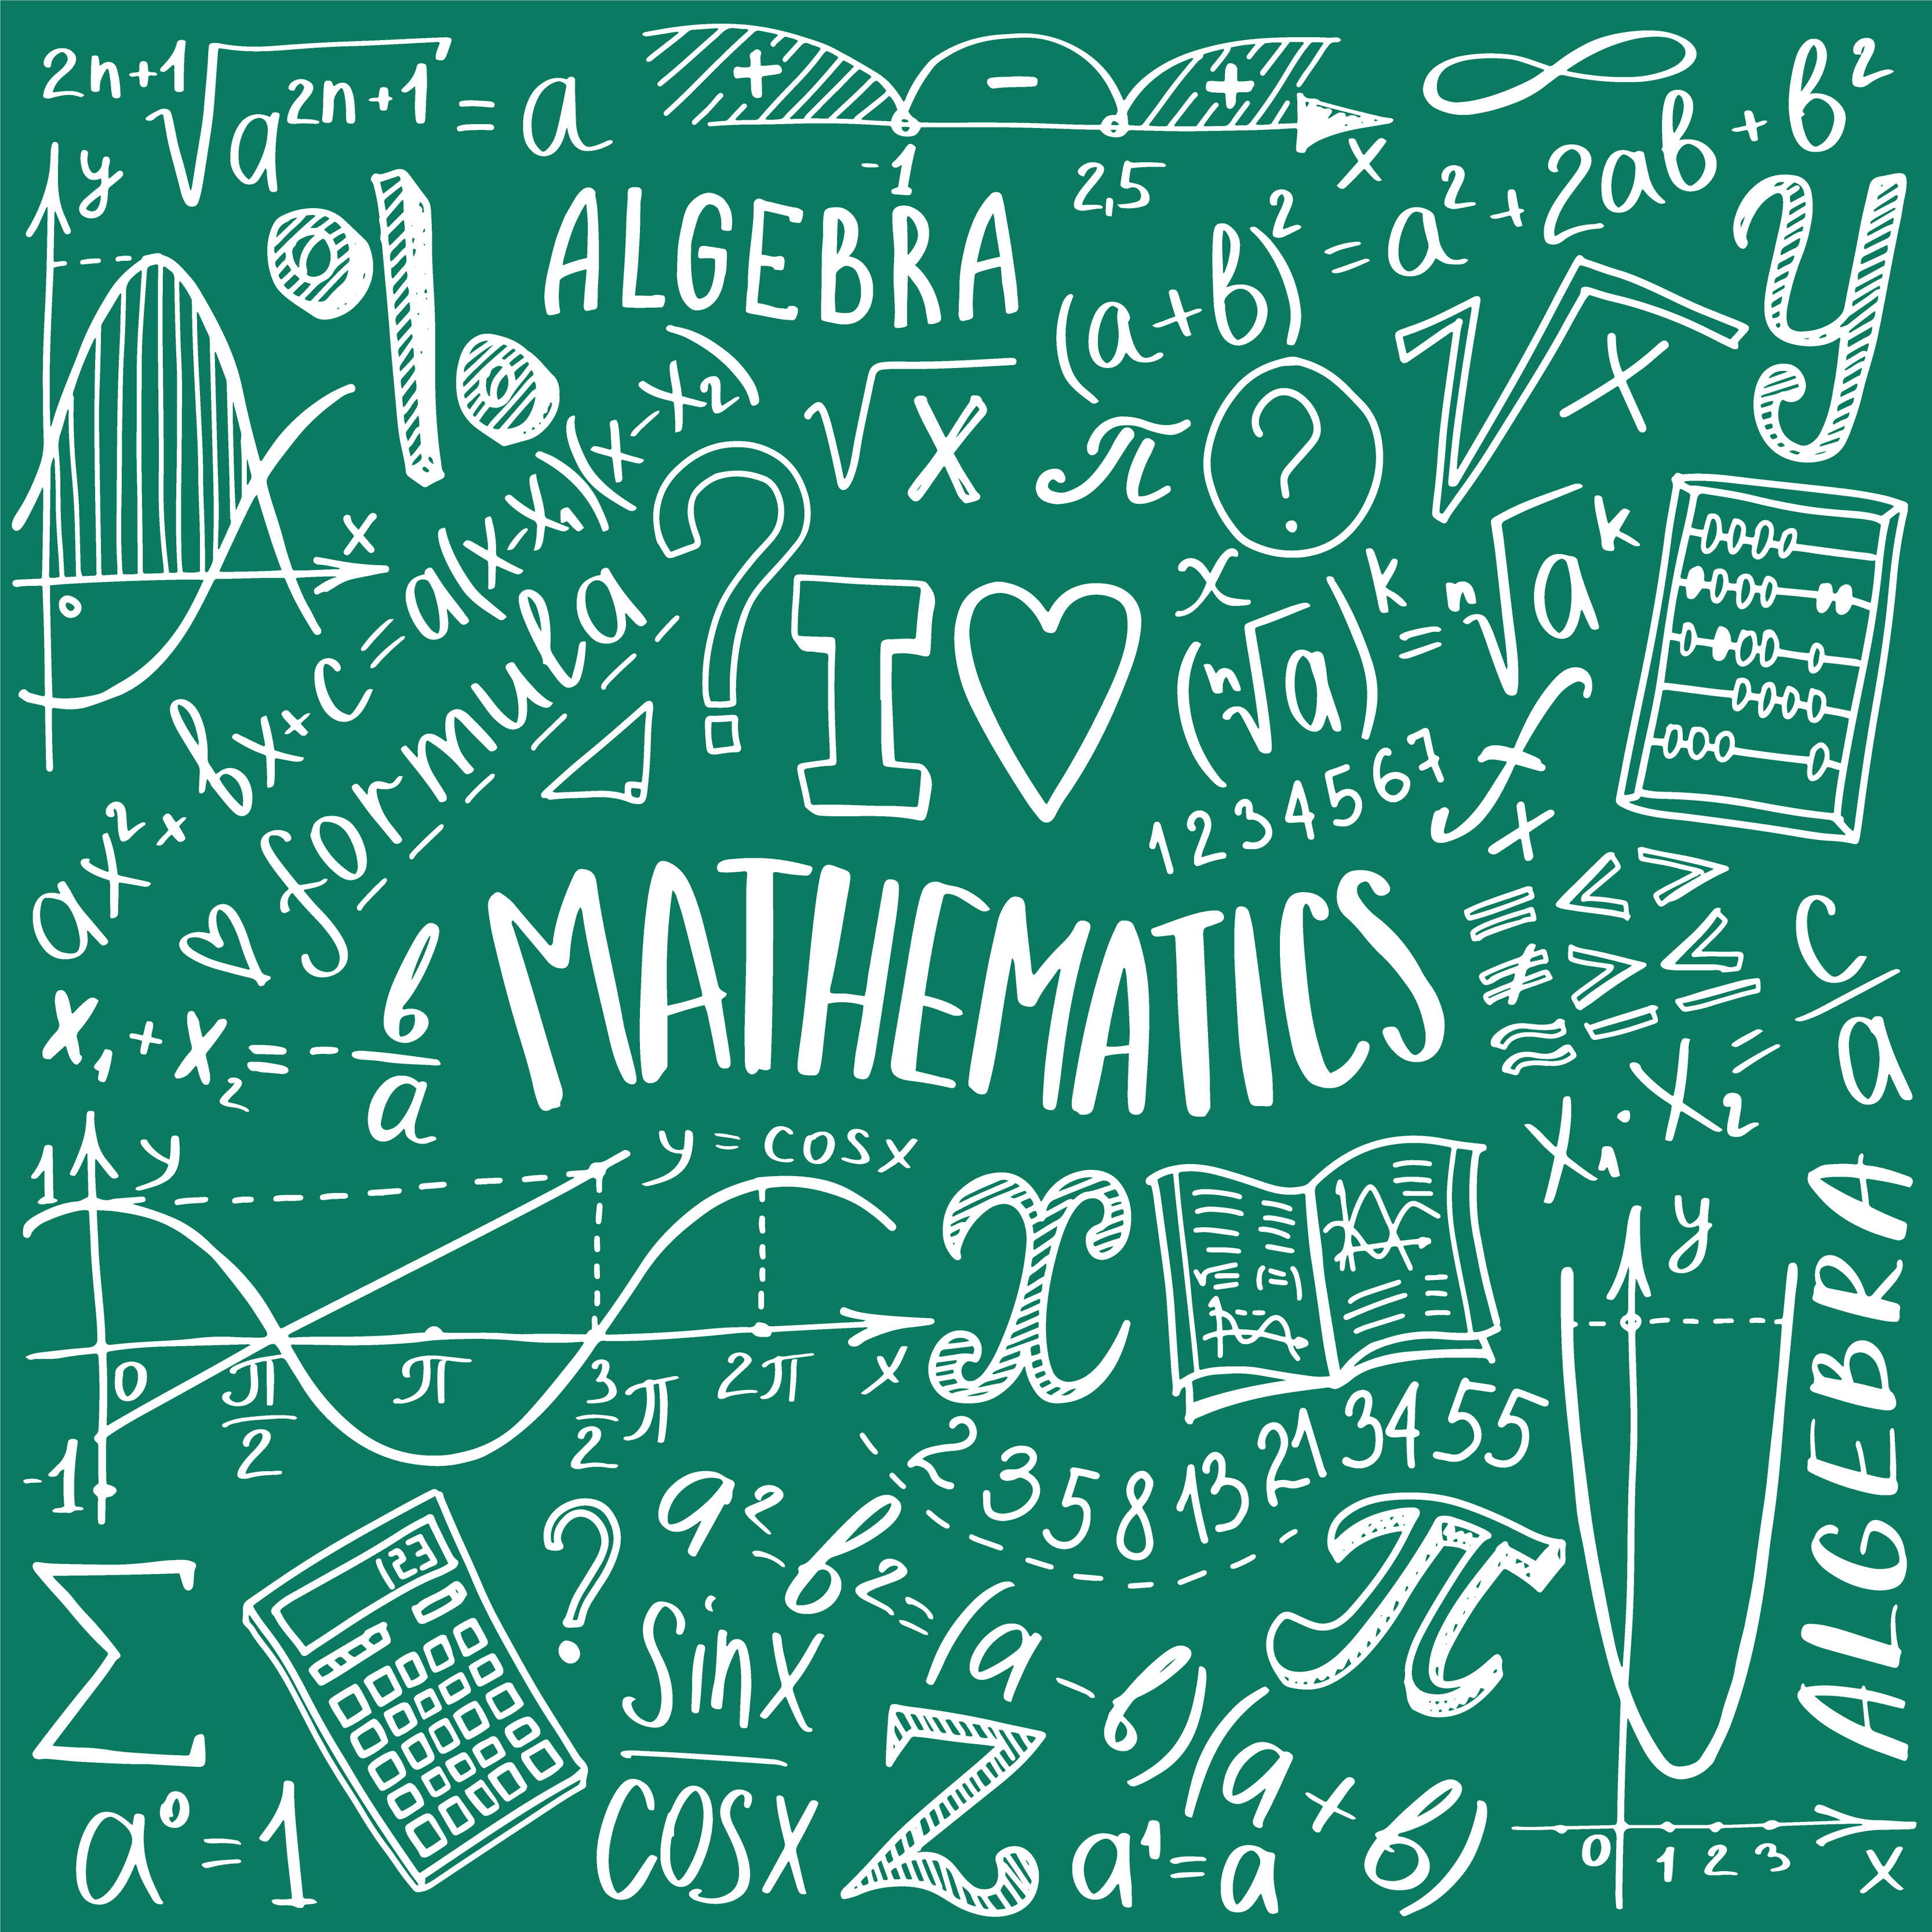 Nếu bạn là một fan cuồng của toán học, không thể bỏ qua bộ biểu tượng toán học này! Những biểu tượng thú vị và đầy màu sắc sẽ khiến bạn cảm thấy thích thú trong việc học tập và giải quyết các bài toán khó khăn nhất. Đừng chần chừ mà hãy khám phá bộ biểu tượng độc đáo này ngay hôm nay! 